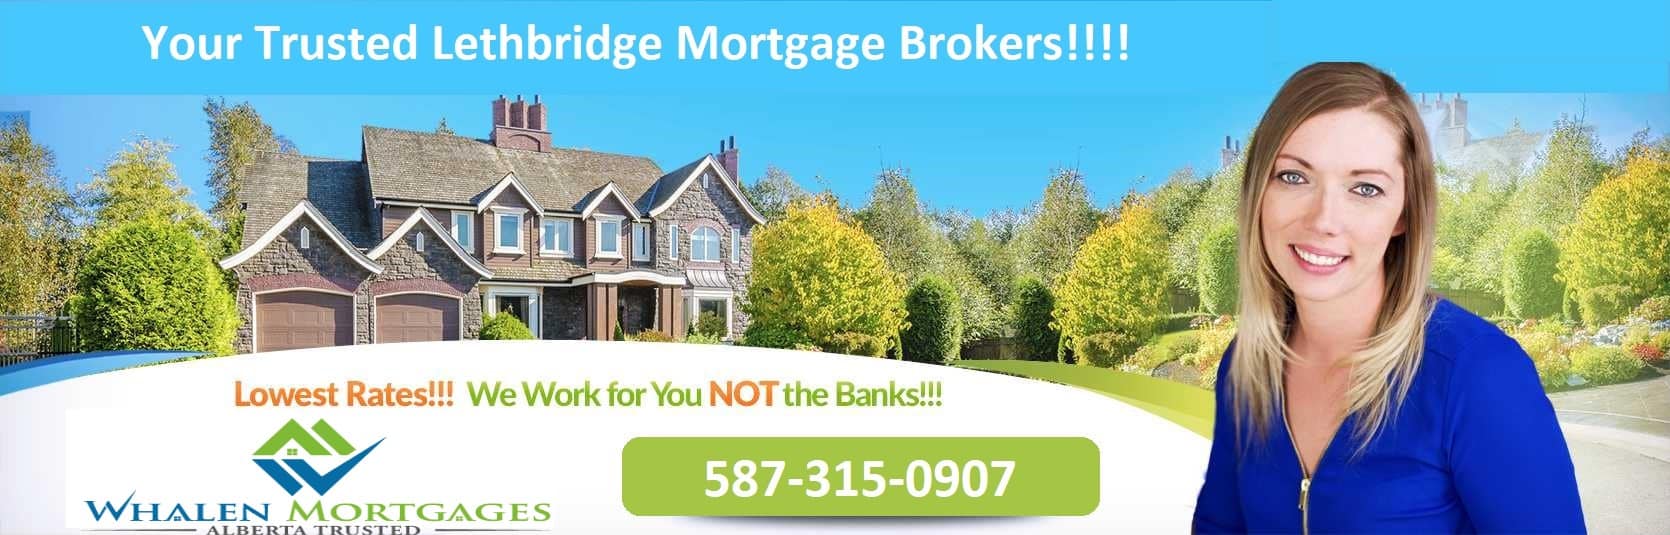 Lethbridge Mobile Mortgages | Mortgages on Mobile Lethbridge | 